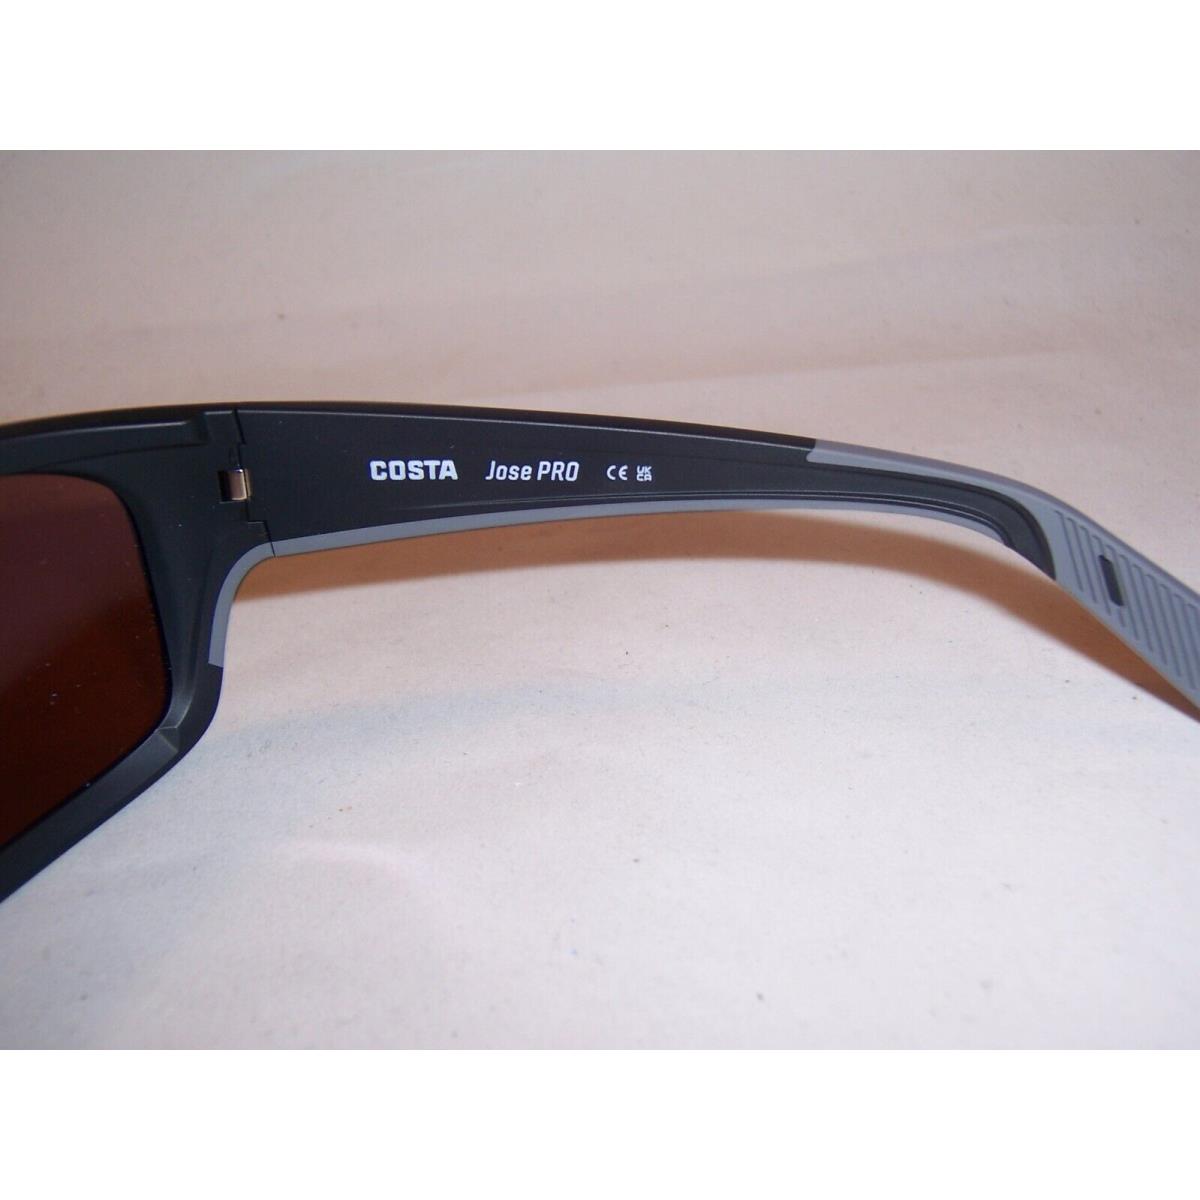 Costa Del Mar Jose Pro Sunglasses Black/copper Mirror 580G Polarized